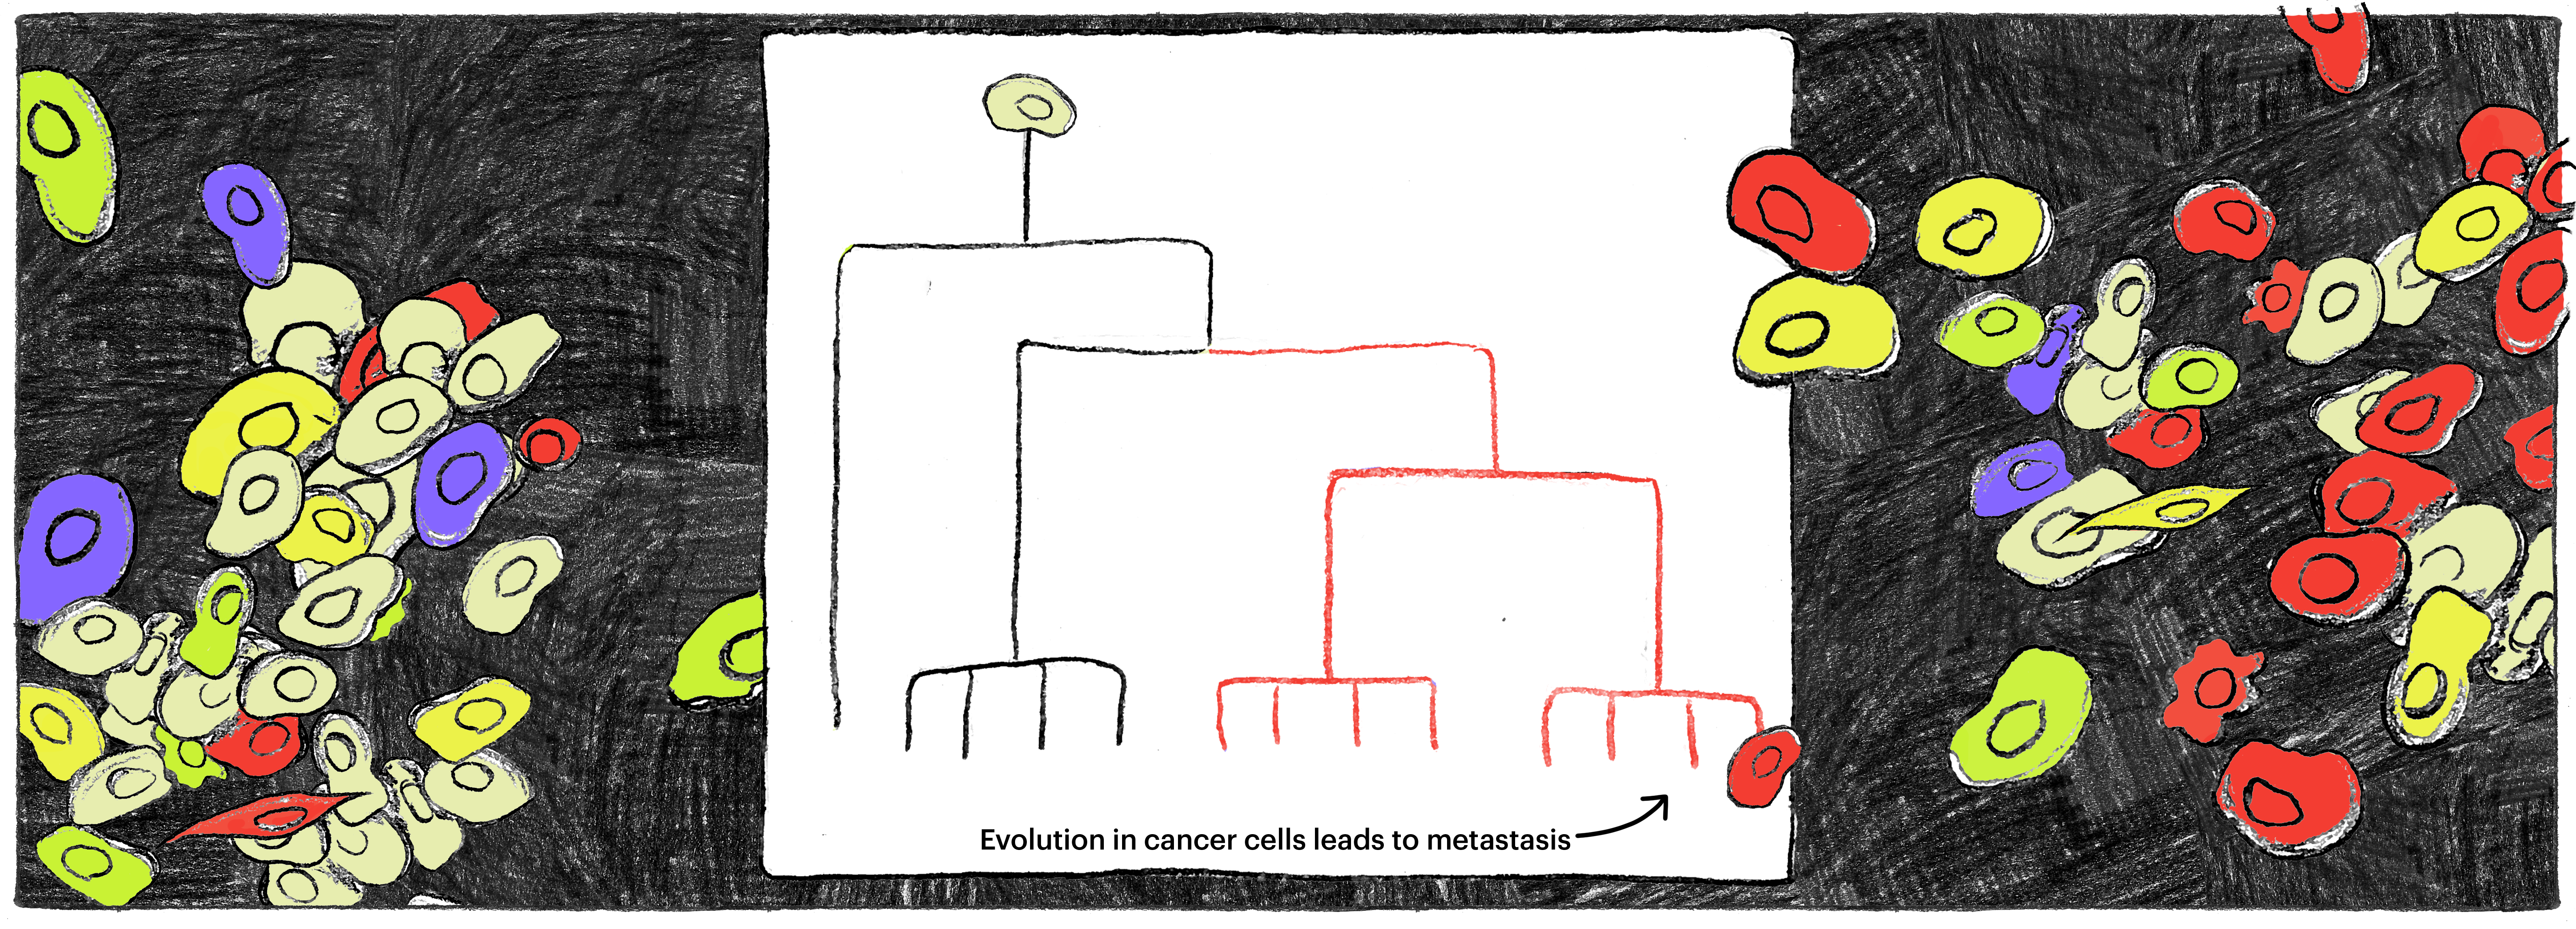 evolution of cancer cells over time 